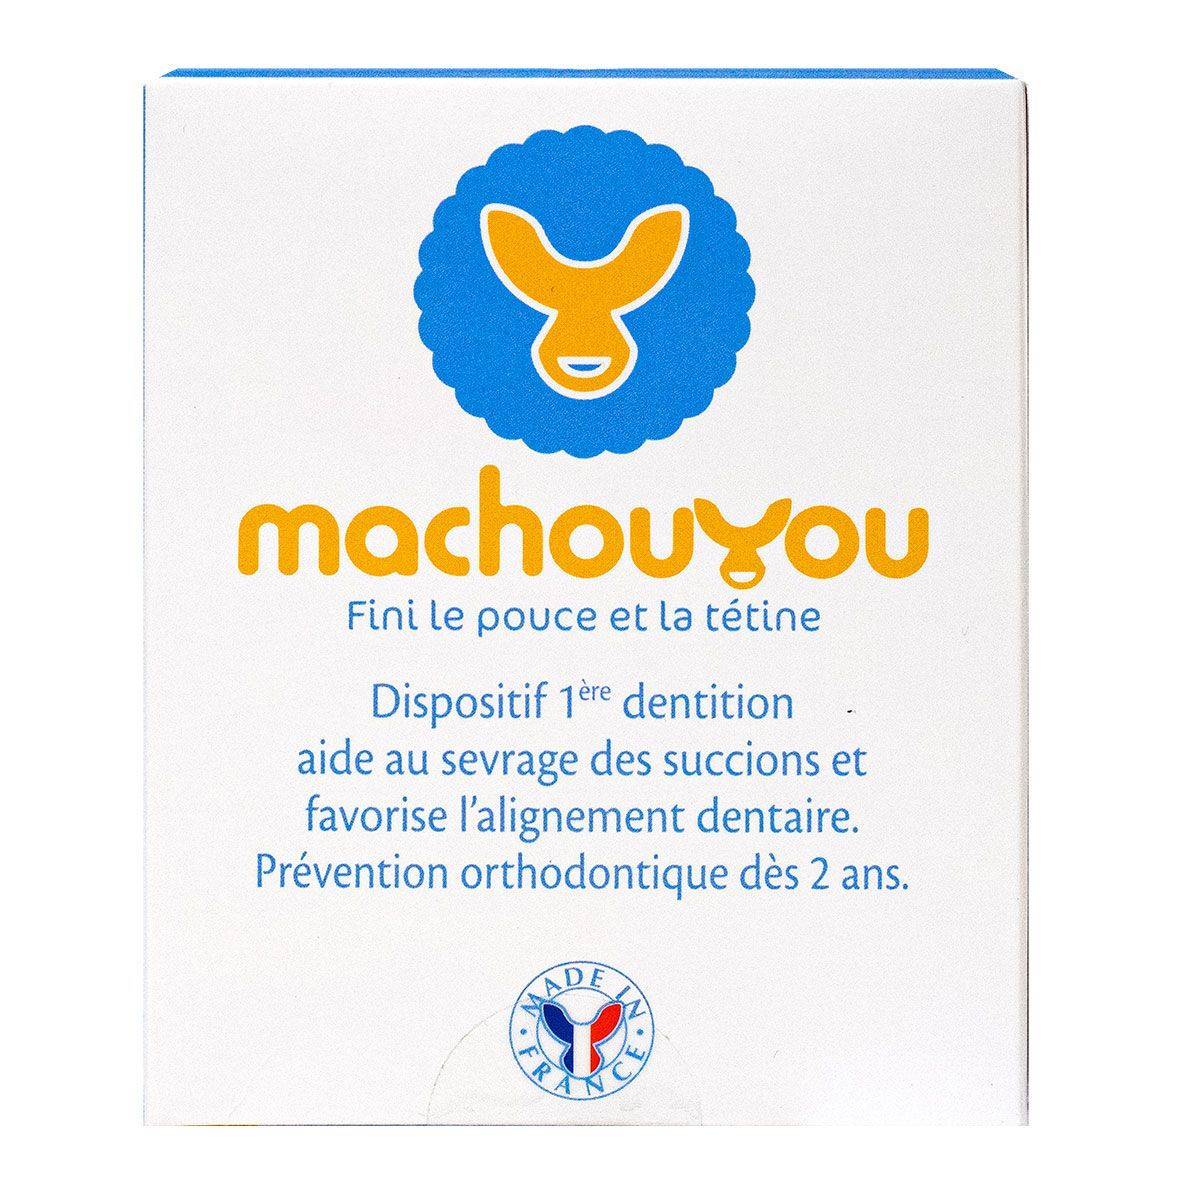 Machouyou – Fini le pouce et la tétine